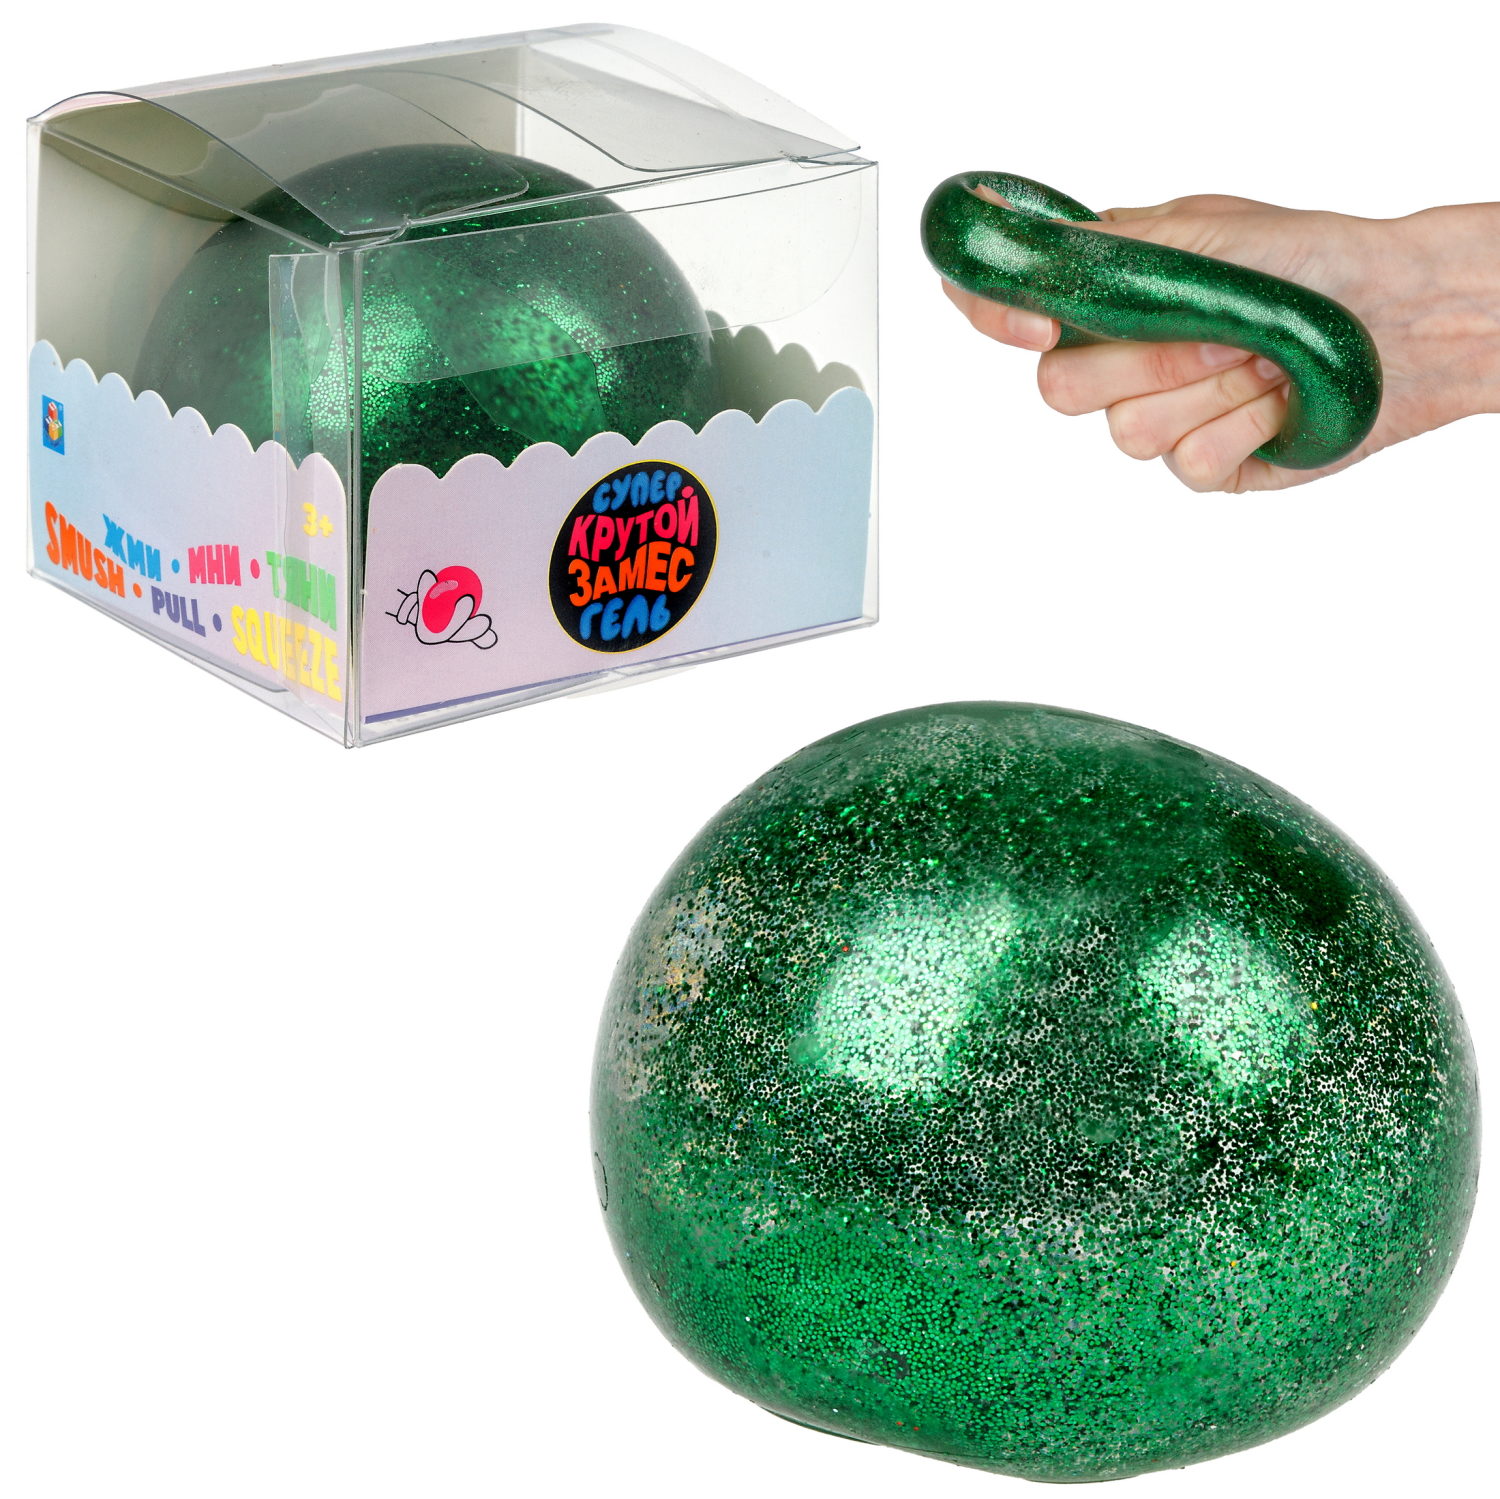 Игрушка-антистресс 1toy Крутой замес Супергель зелёный шар блестки 6см слайм игрушка антистресс slime с ароматом мандарина 250г